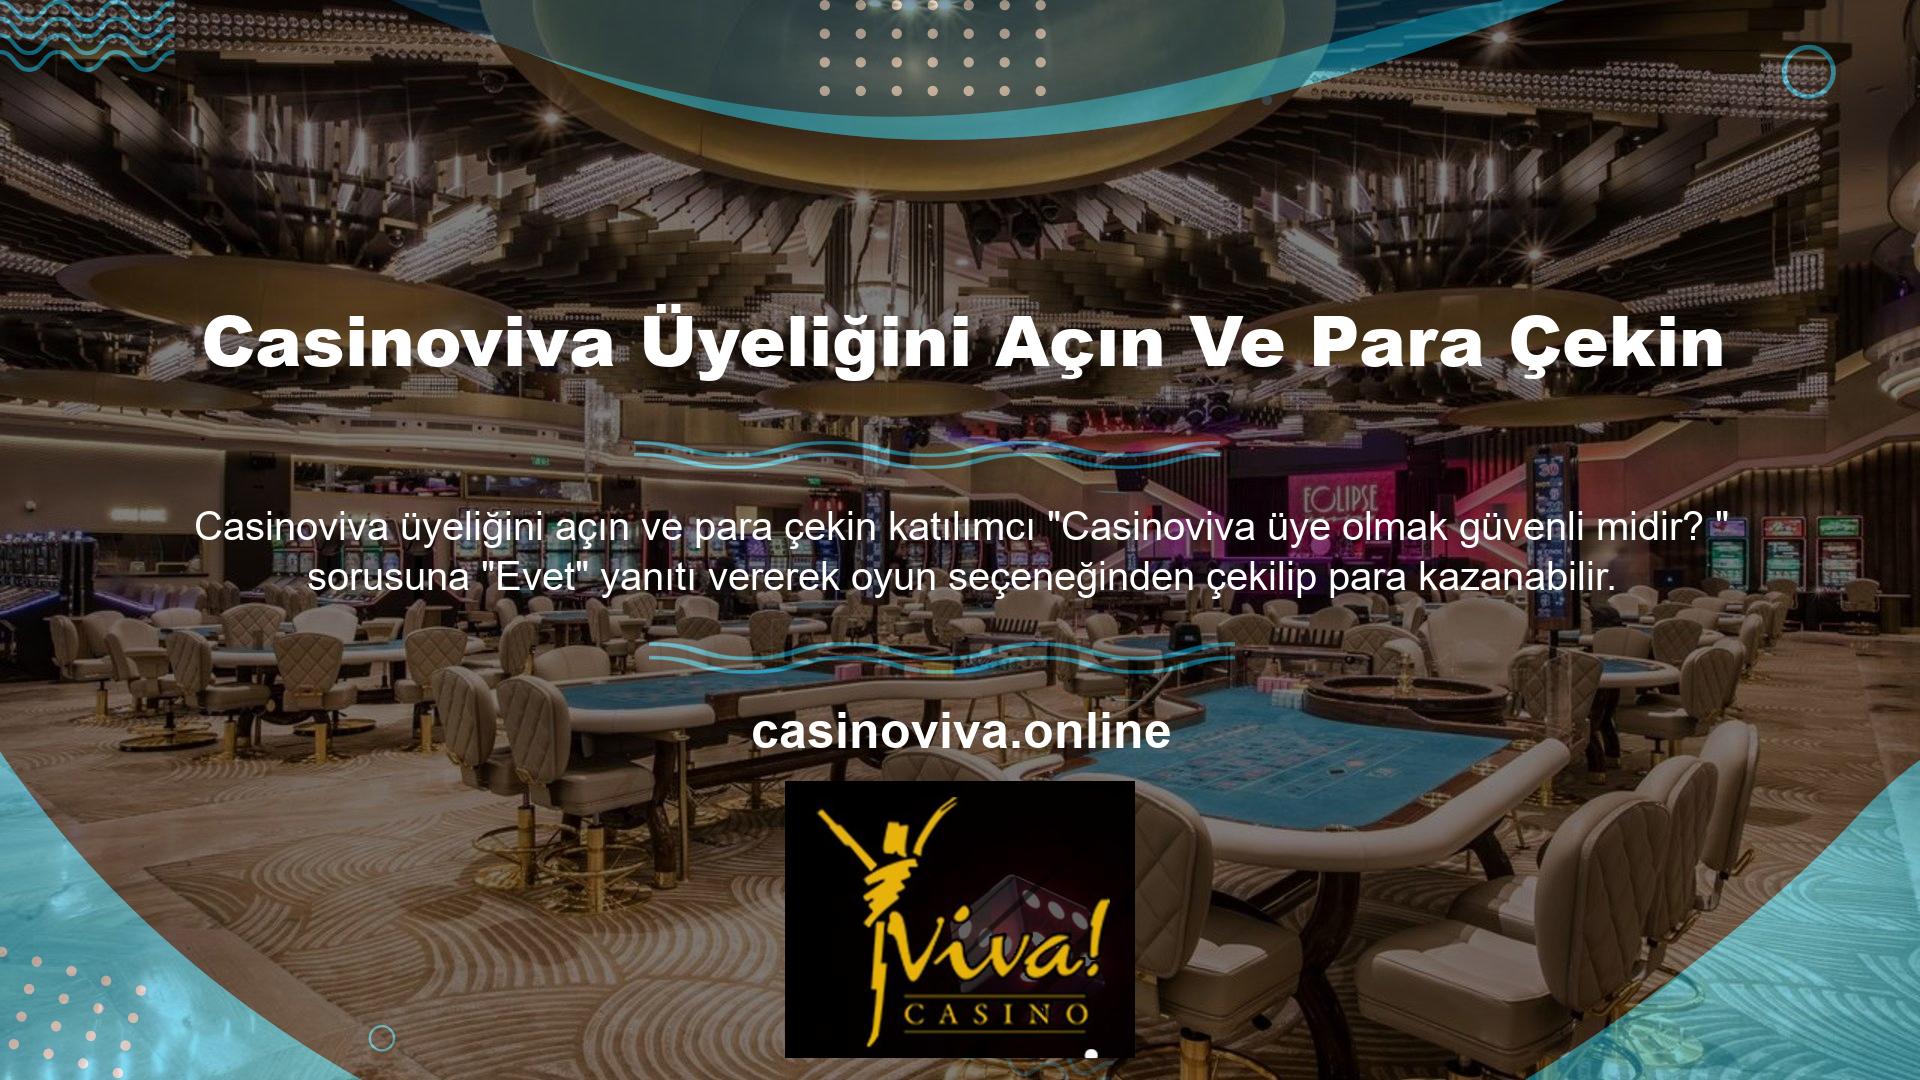 Site, Casinoviva ödemelerinin güvenilirliğini sağlamak için üyelerine birden fazla ödeme seçeneğiyle destek vermektedir